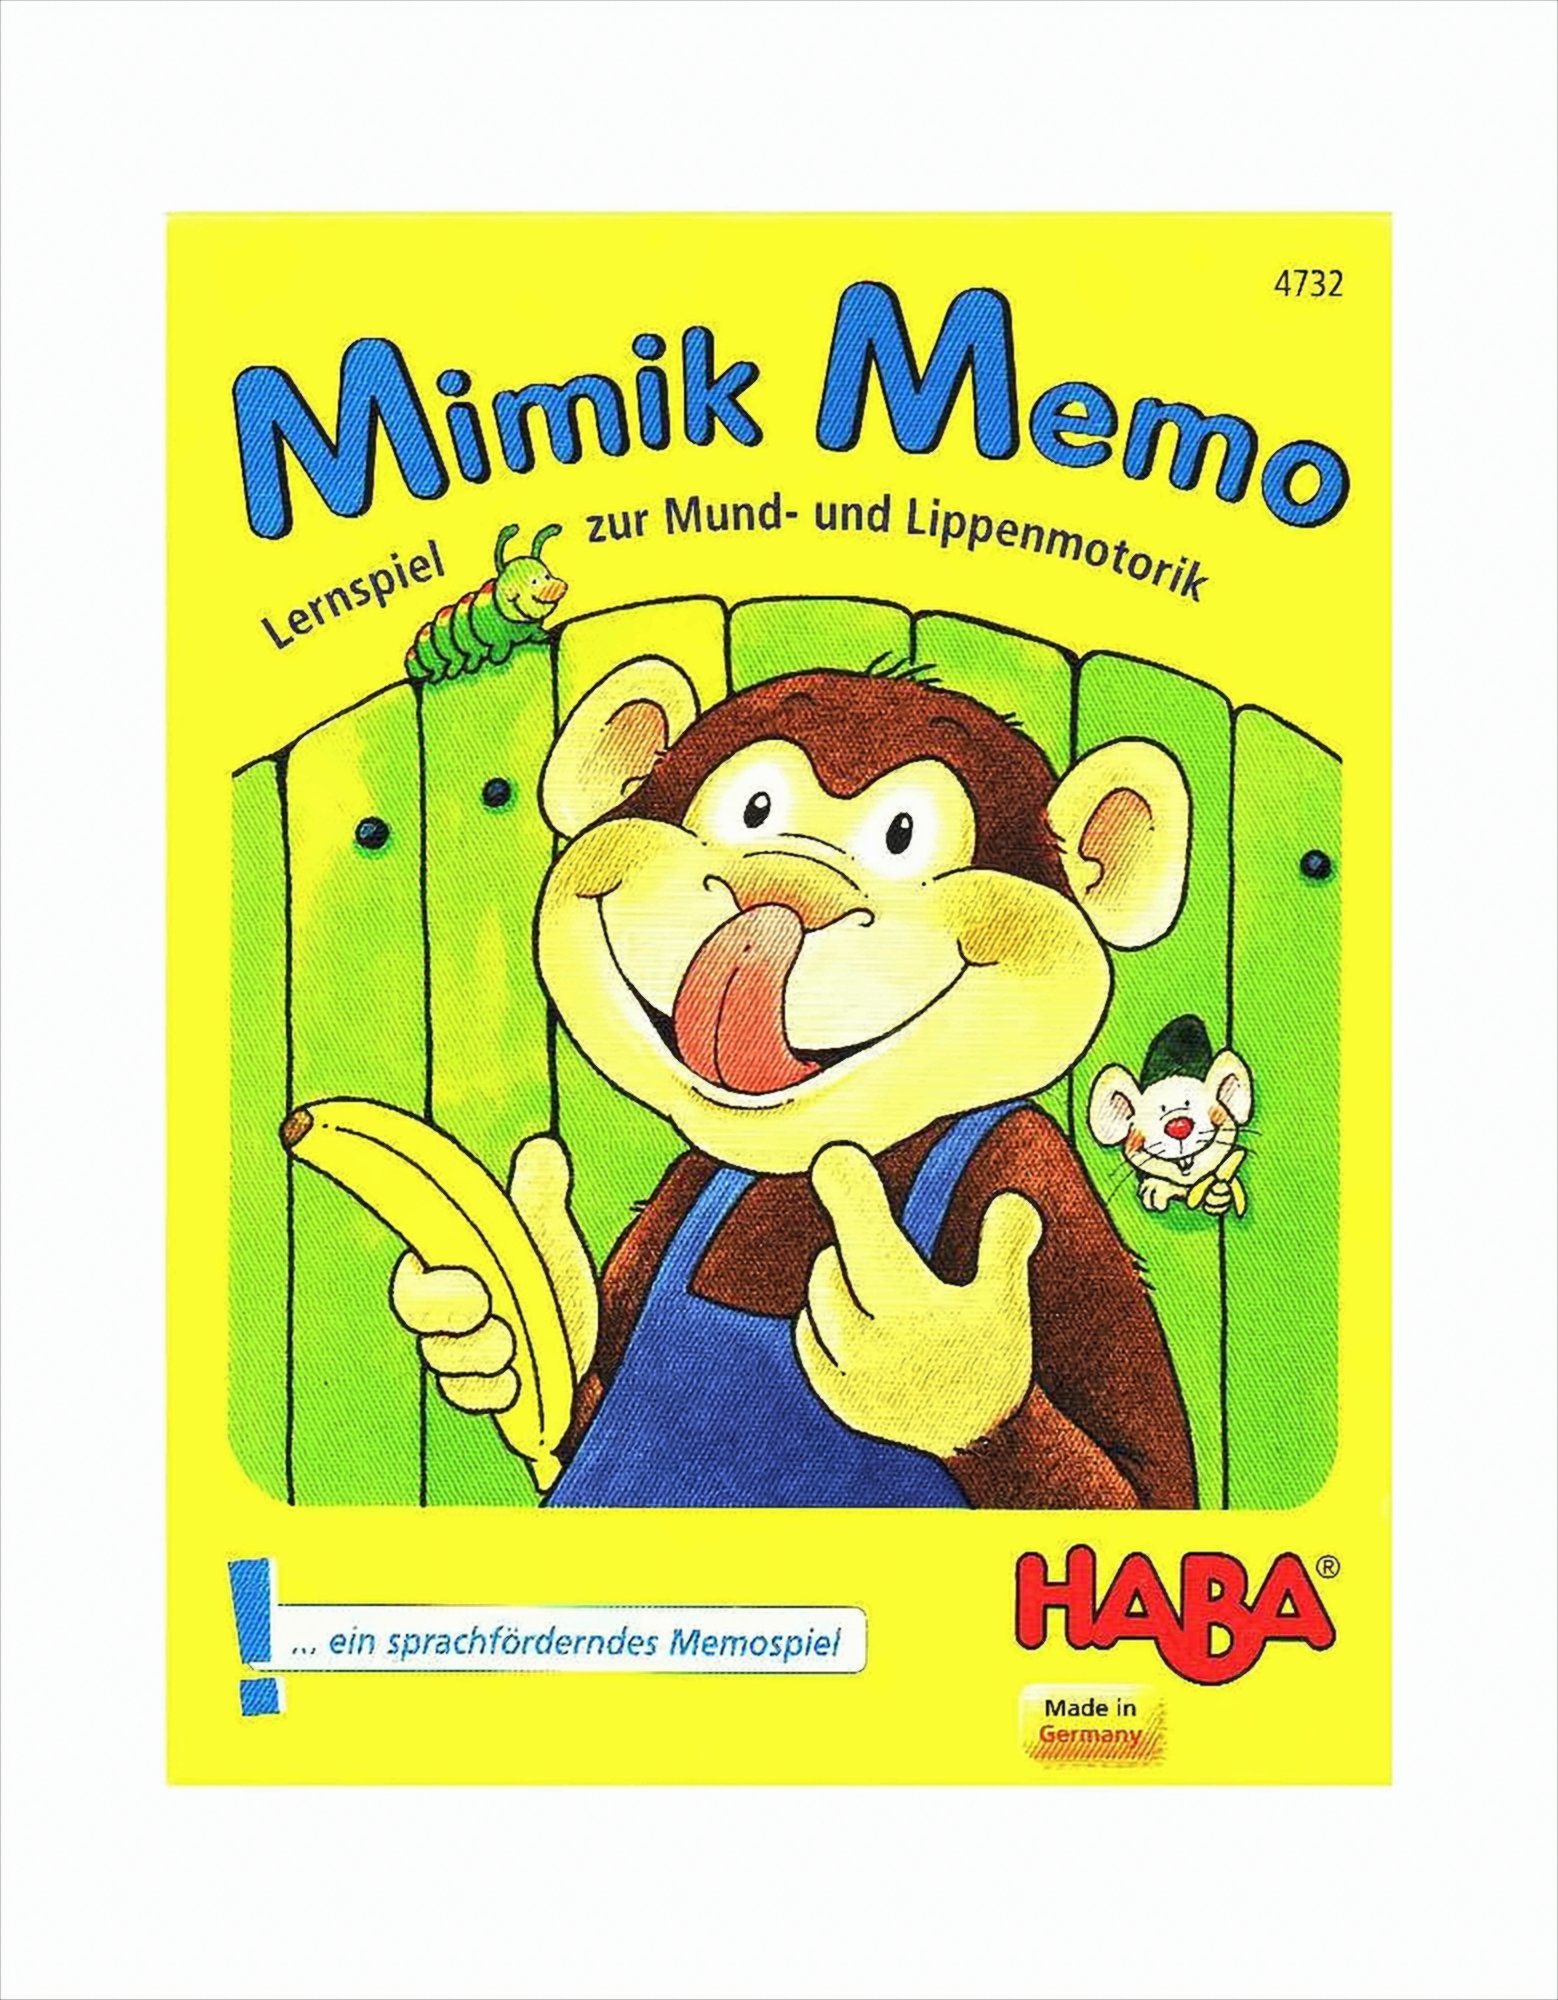 Mimik-Memo - das Kartenspiel von Haba